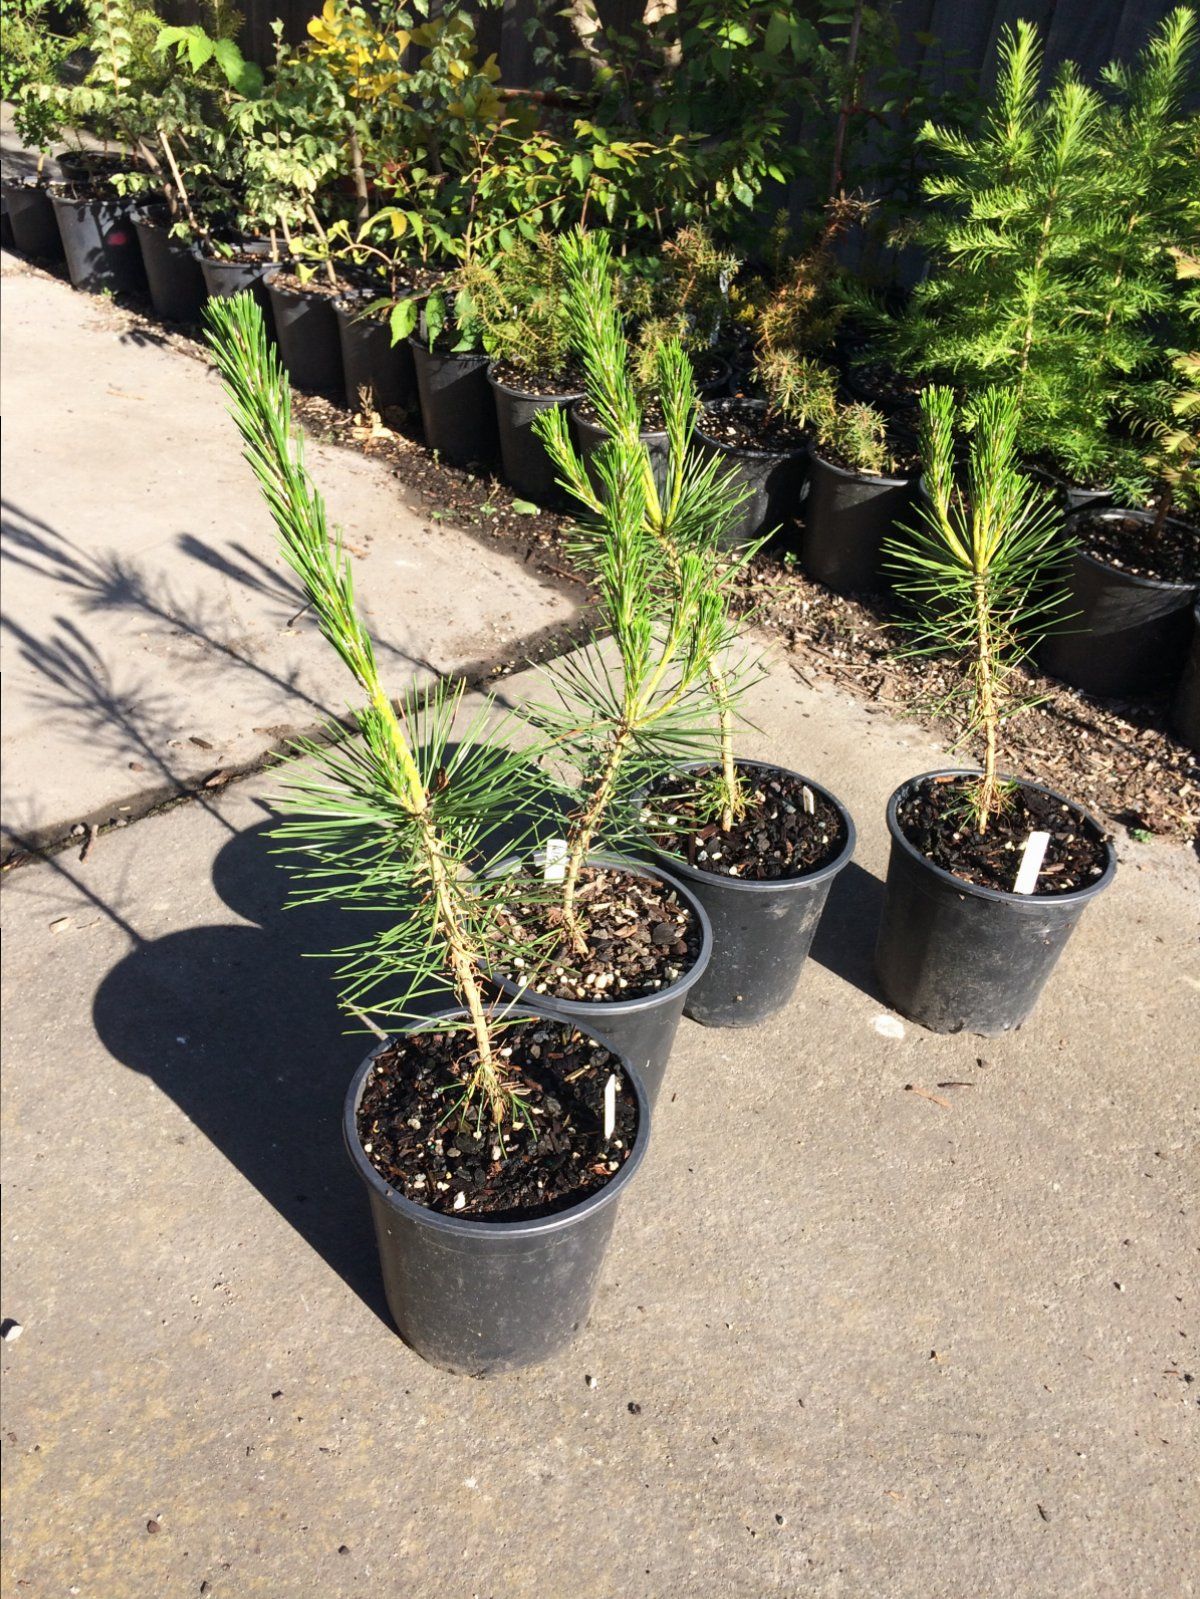 Black pine seedlings